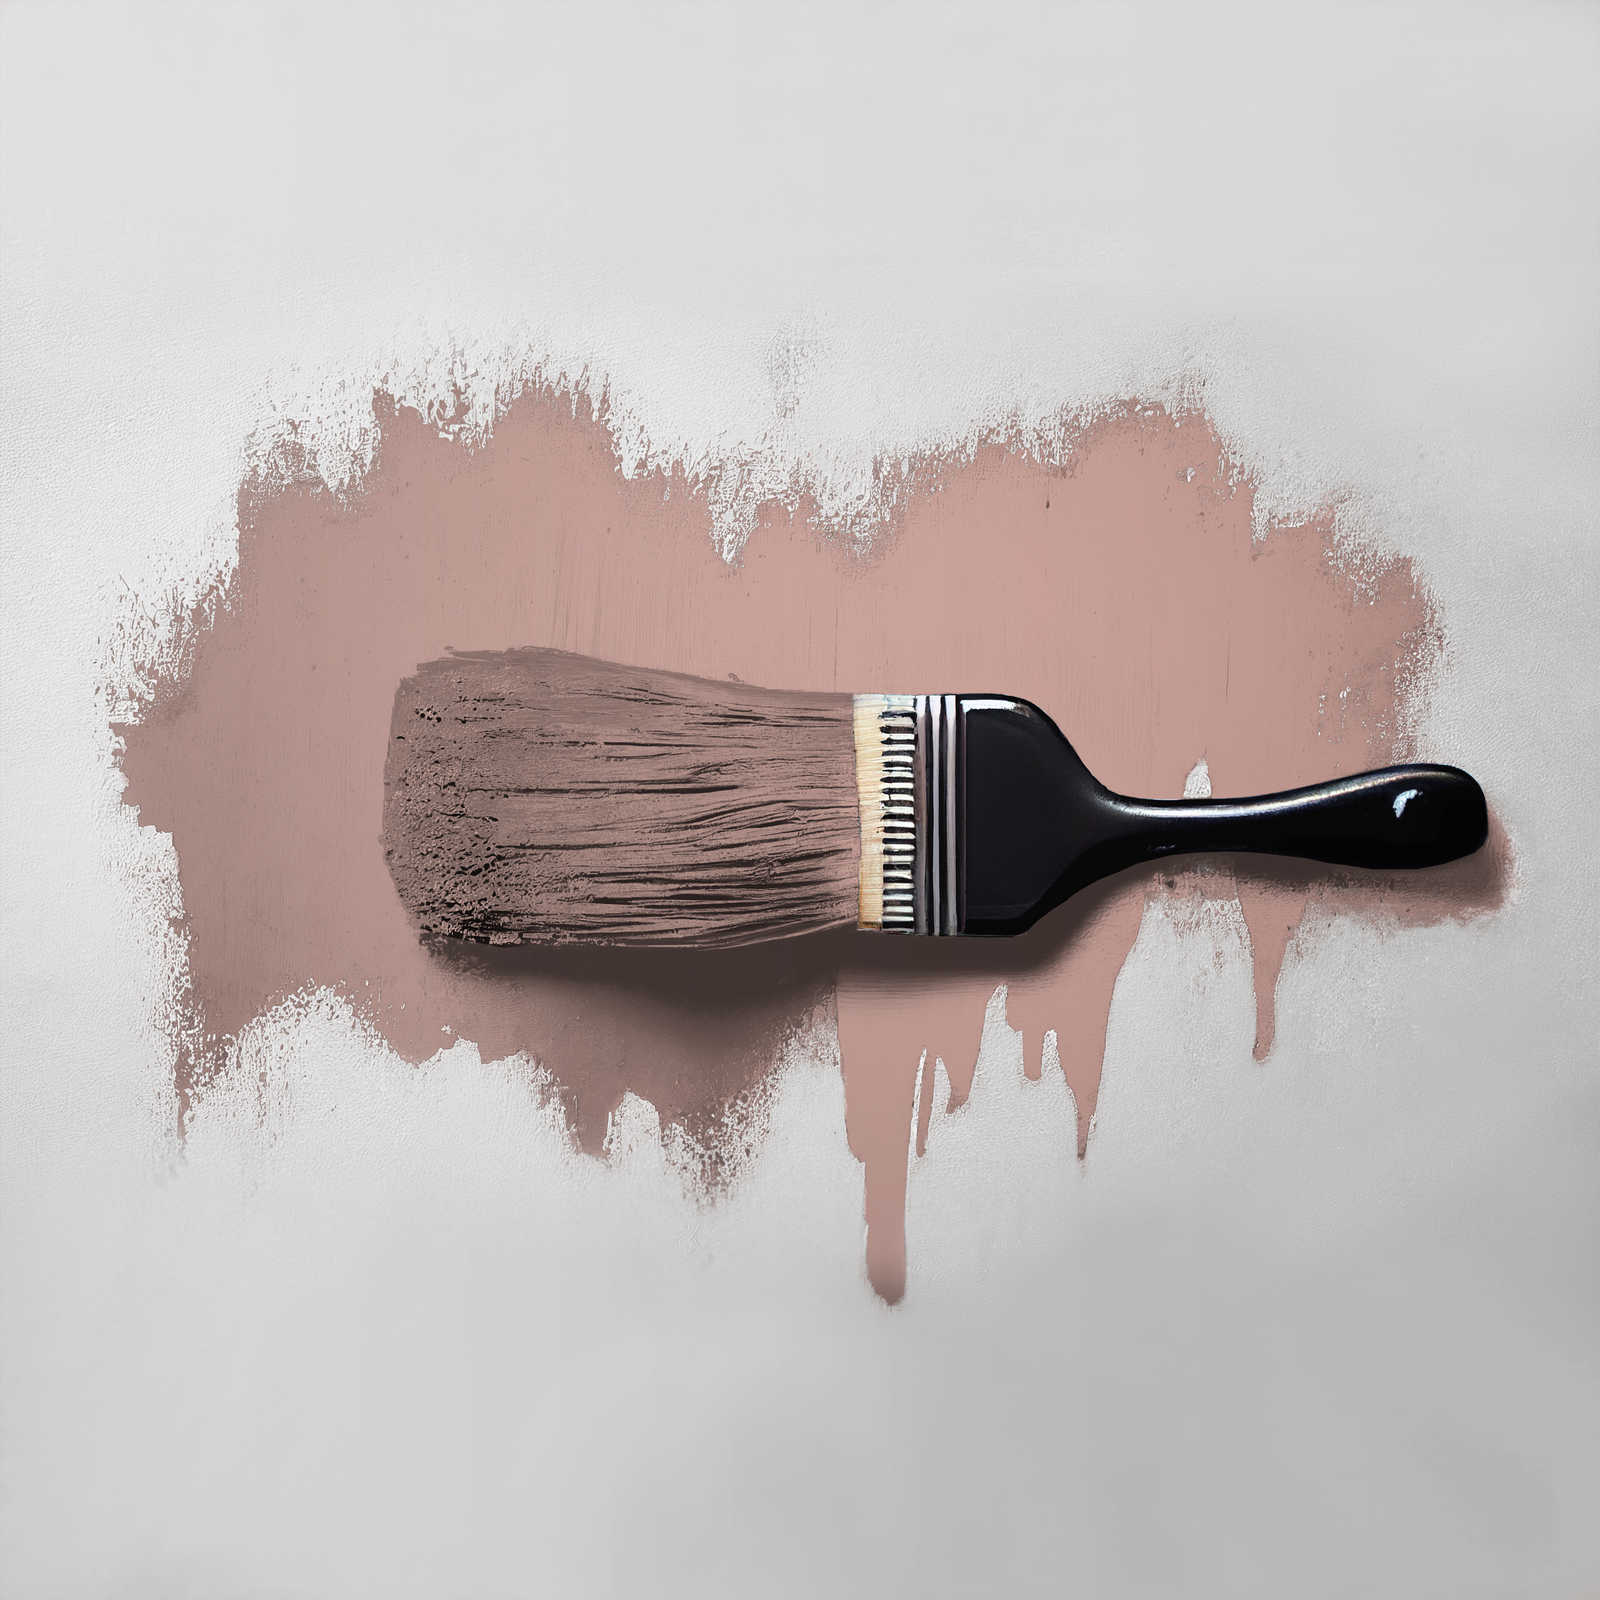             Wandfarbe in rötlichem Beige »Jellied Jostaberry« TCK7002 – 2,5 Liter
        